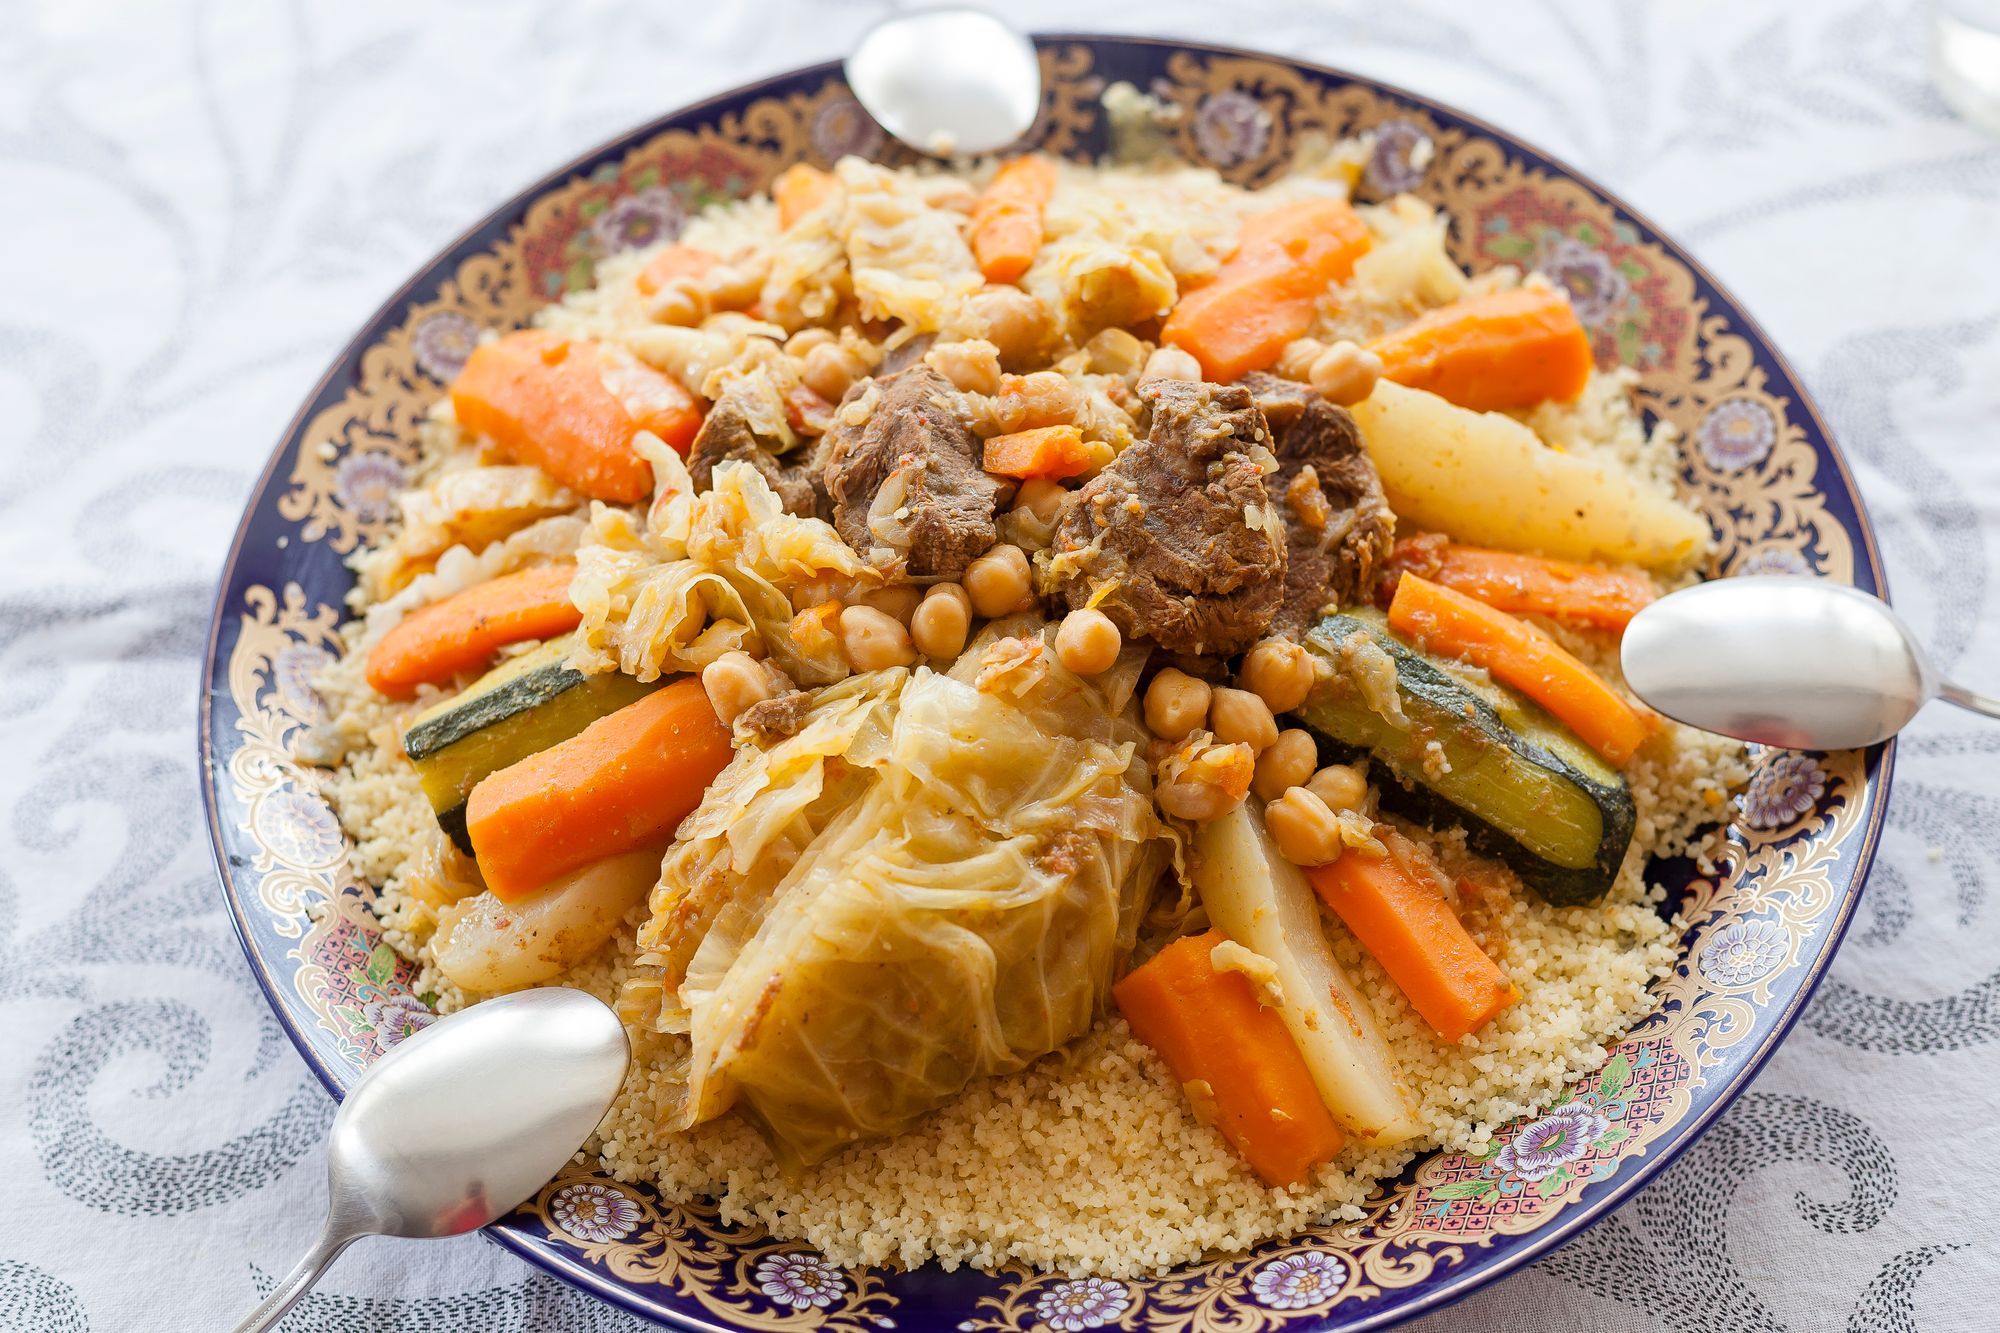 Le traditionnel couscous est servi à l'Aïd al-Fitr